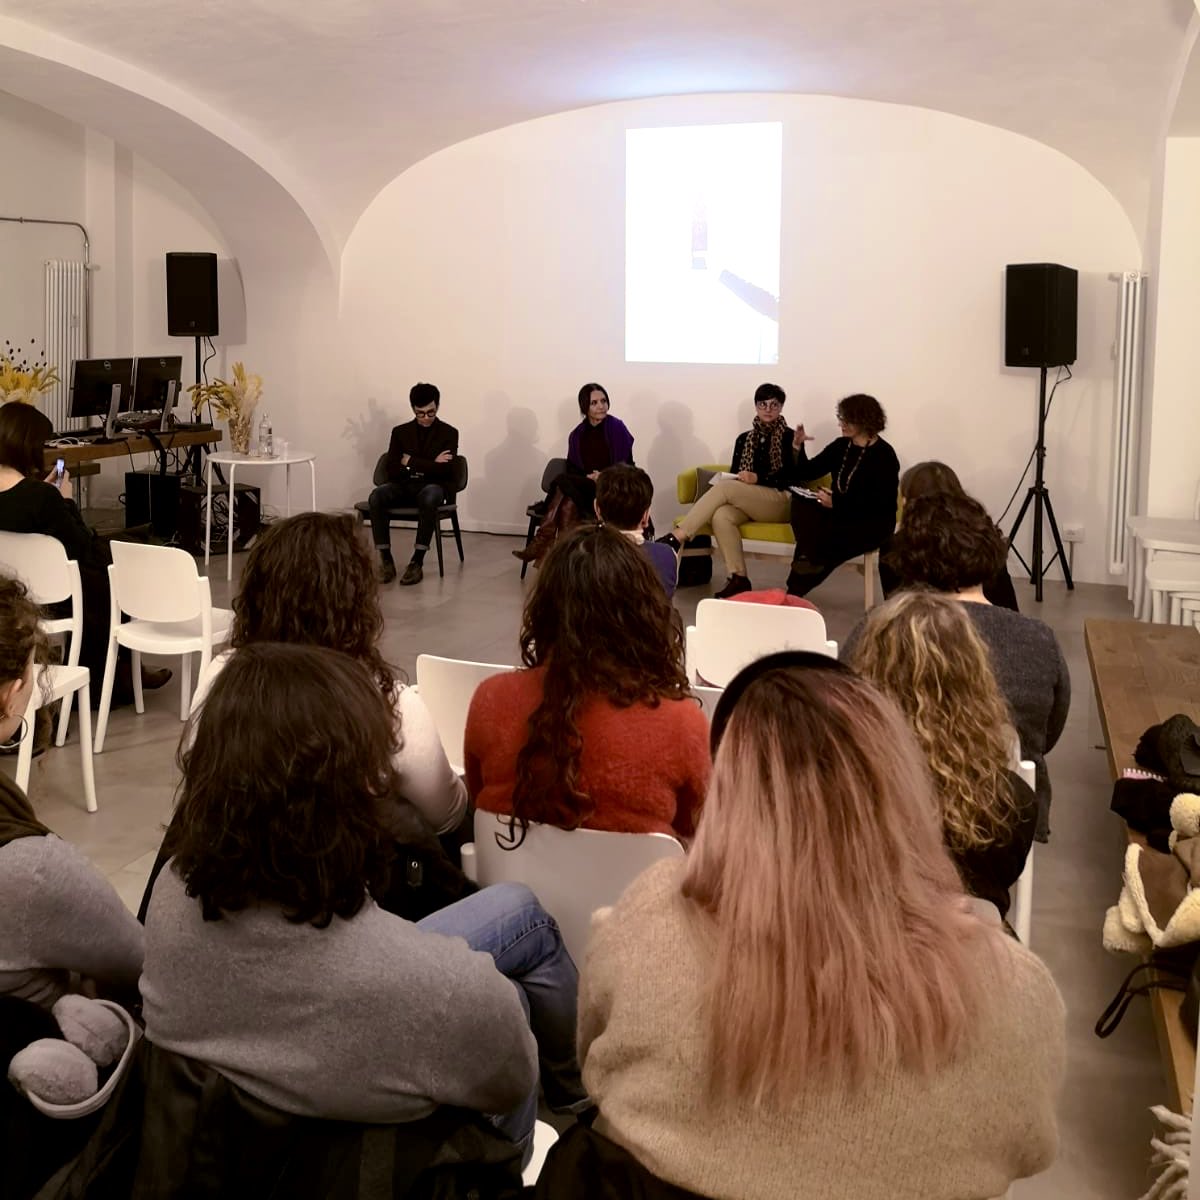 Questa sera al @CdD_torino si svelano i segreti della collezione #HABITAT in un talk dove si confrontano il designer @Gio_Botticelli, l’azienda #Mazzucchelli1849 e la gallerista #SWINGdesignGallery. Il #designer rivisita l’ #acetato di #cellulosa